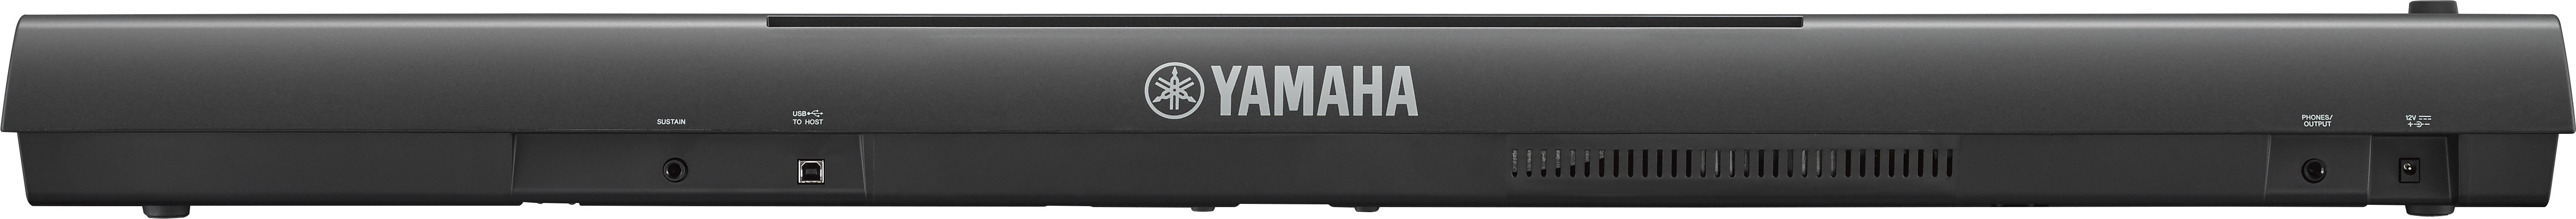 Yamaha Np-32 - Black - Piano digital portatil - Variation 2